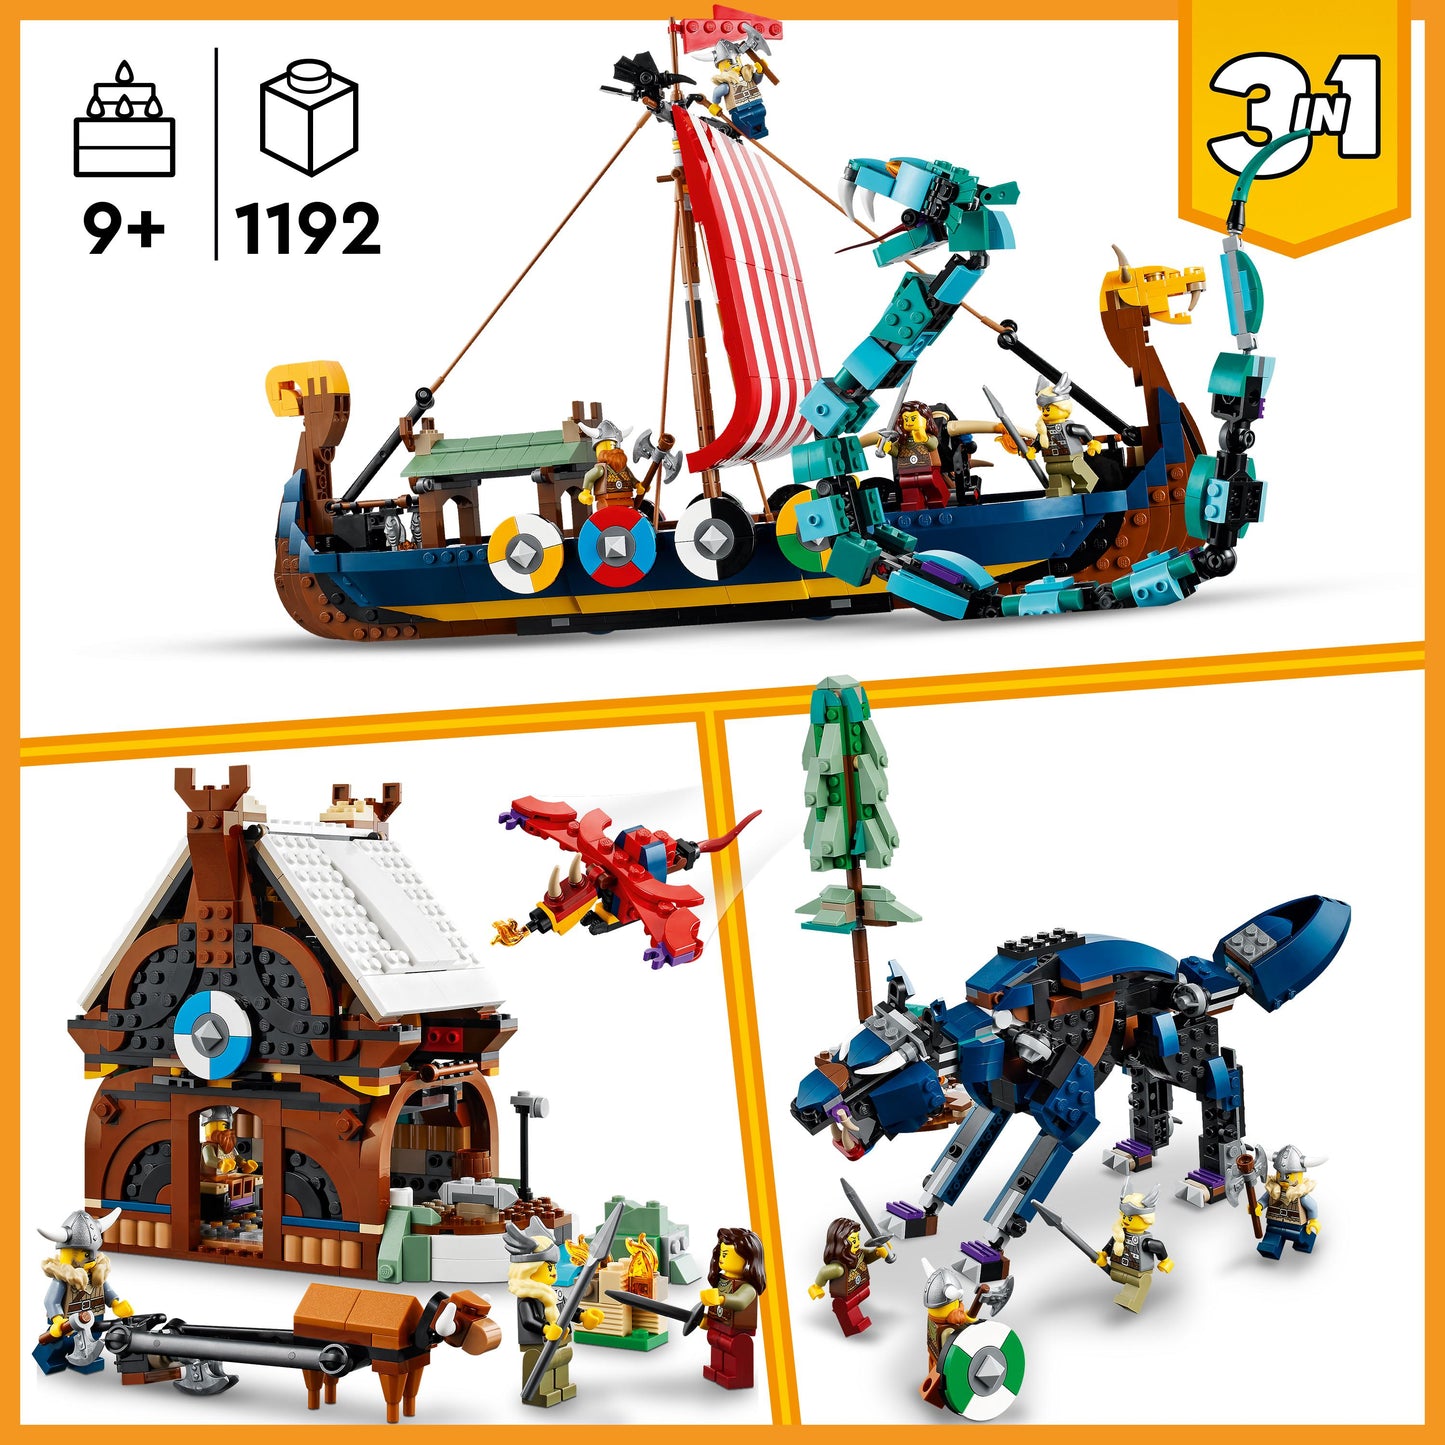 31132 LEGO Creator  - Nave vichinga e Jörmungandr